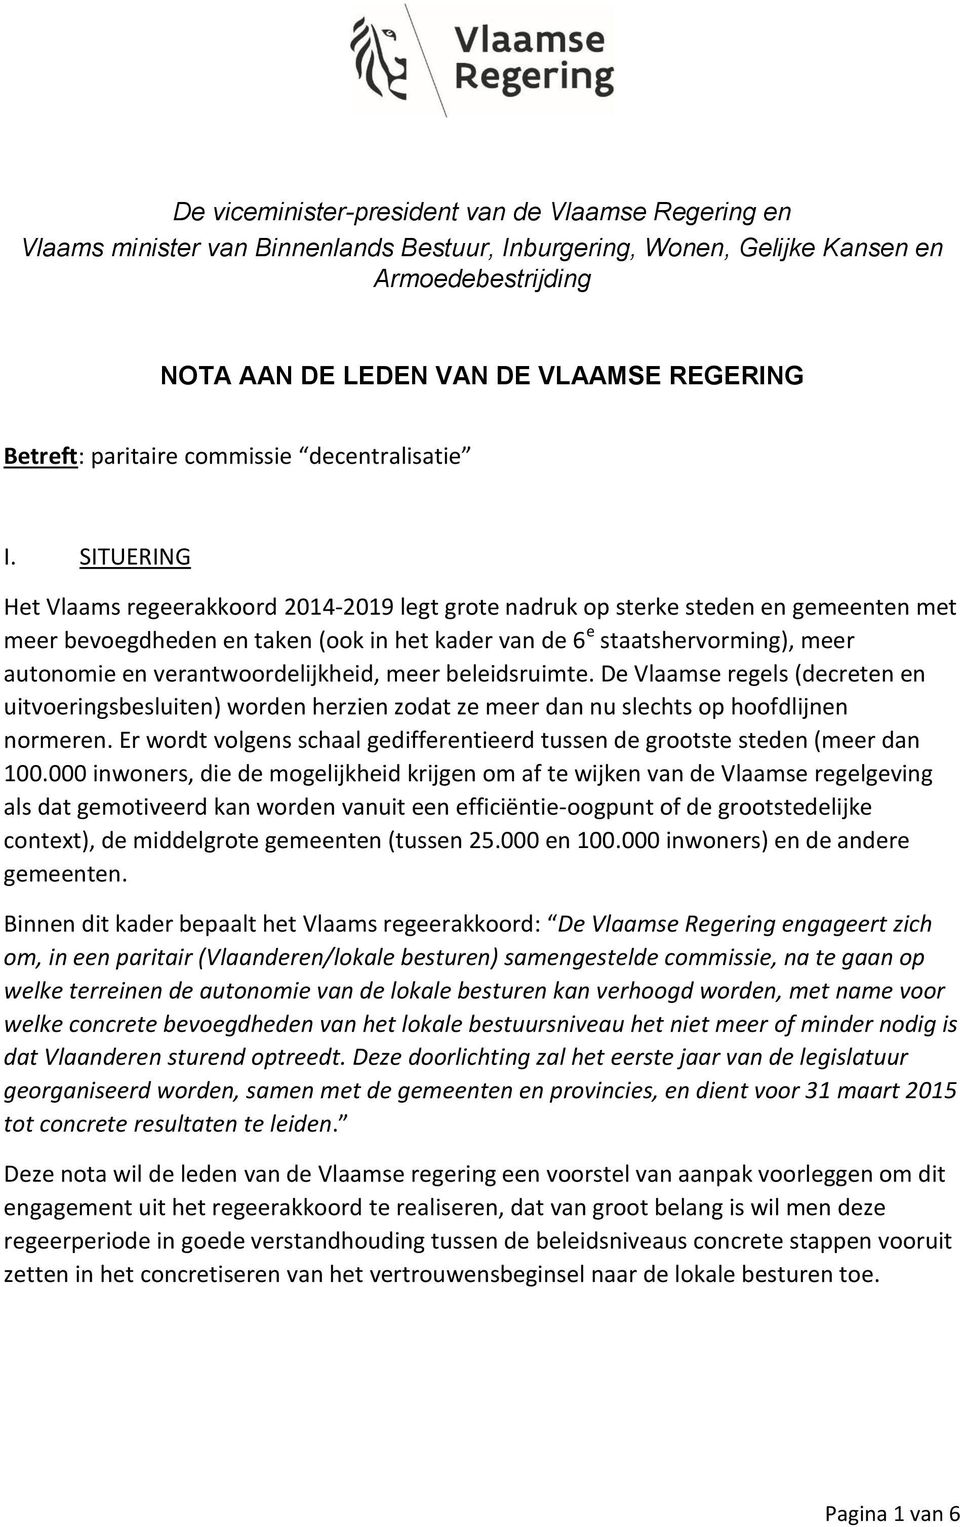 SITUERING Het Vlaams regeerakkoord 2014-2019 legt grote nadruk op sterke steden en gemeenten met meer bevoegdheden en taken (ook in het kader van de 6 e staatshervorming), meer autonomie en